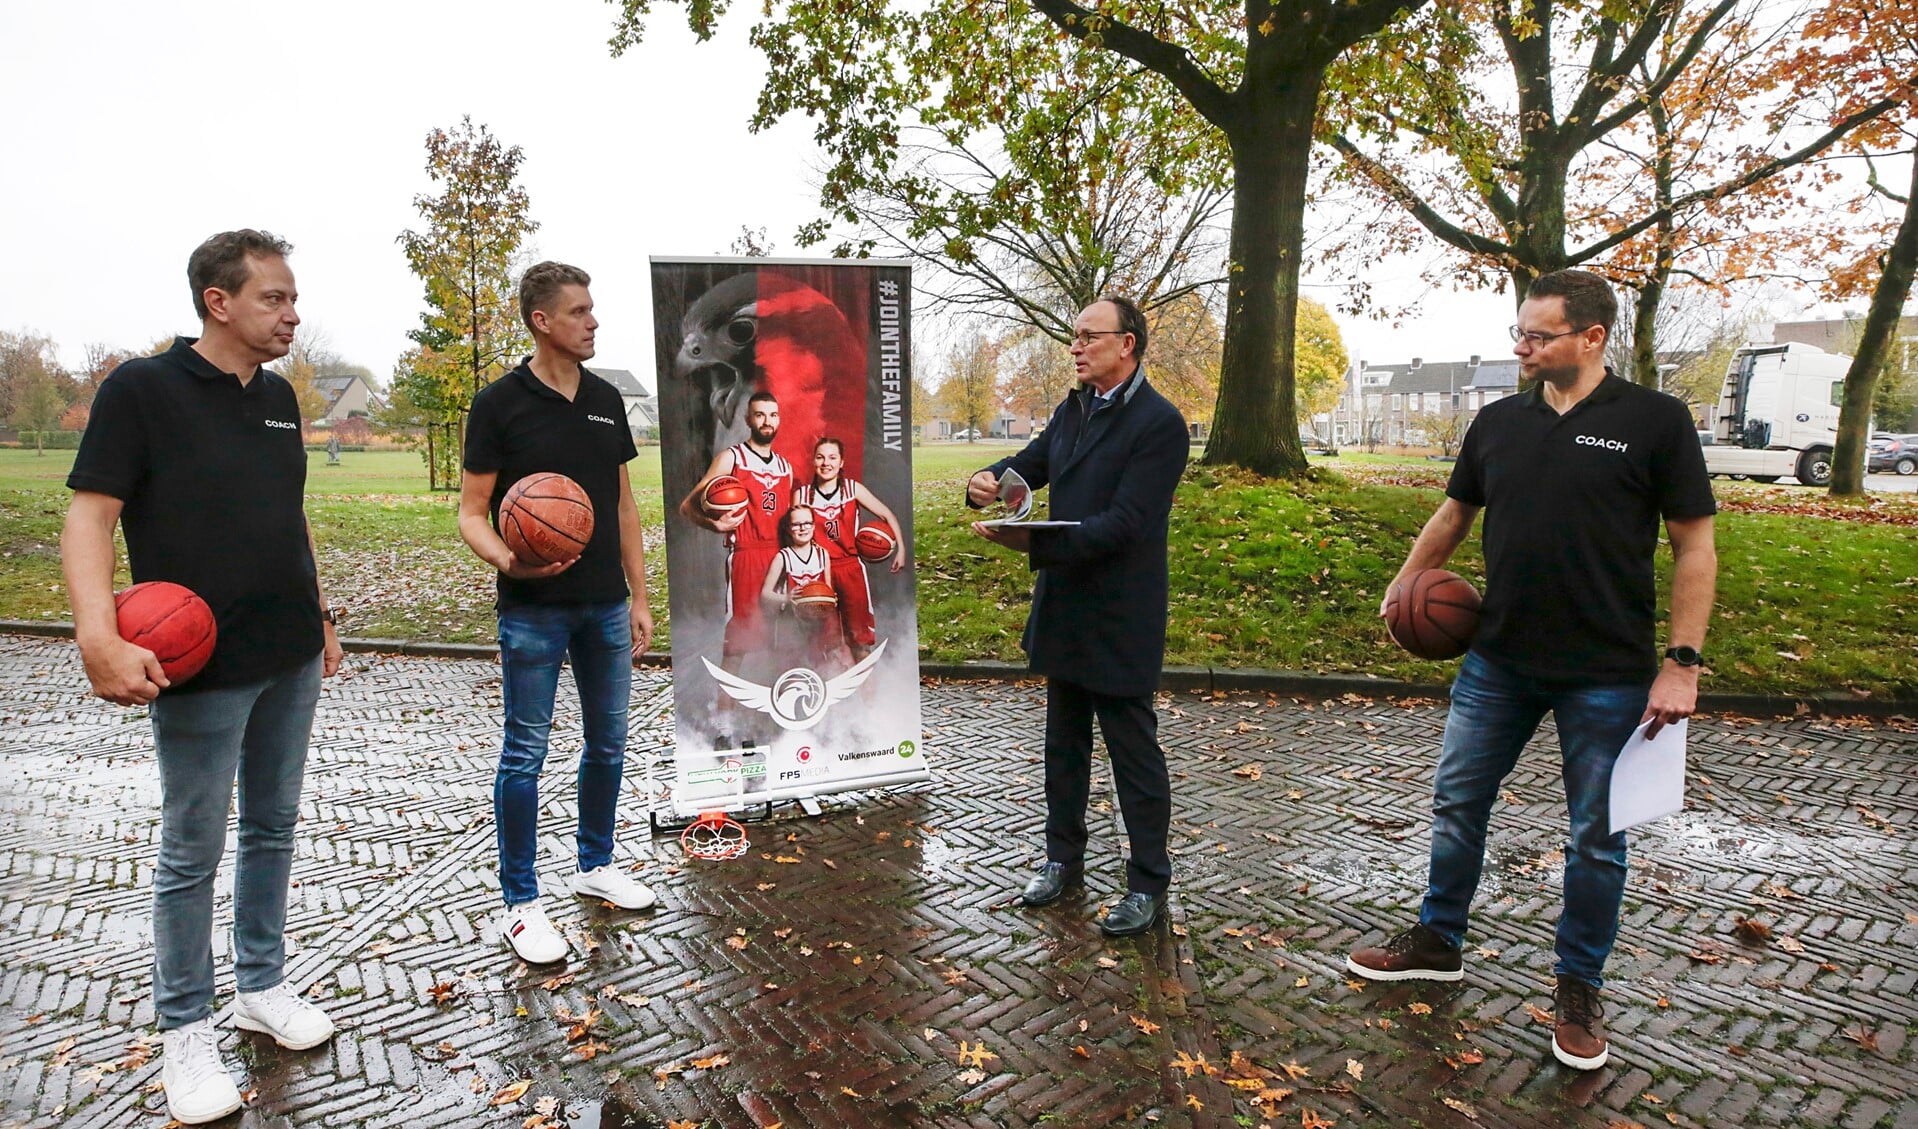 Vlnr: Marco van Hoeck, Bastiaan Waterreus, Theo Geldens en Jaap de Win. (Foto: Jurgen van Hoof)